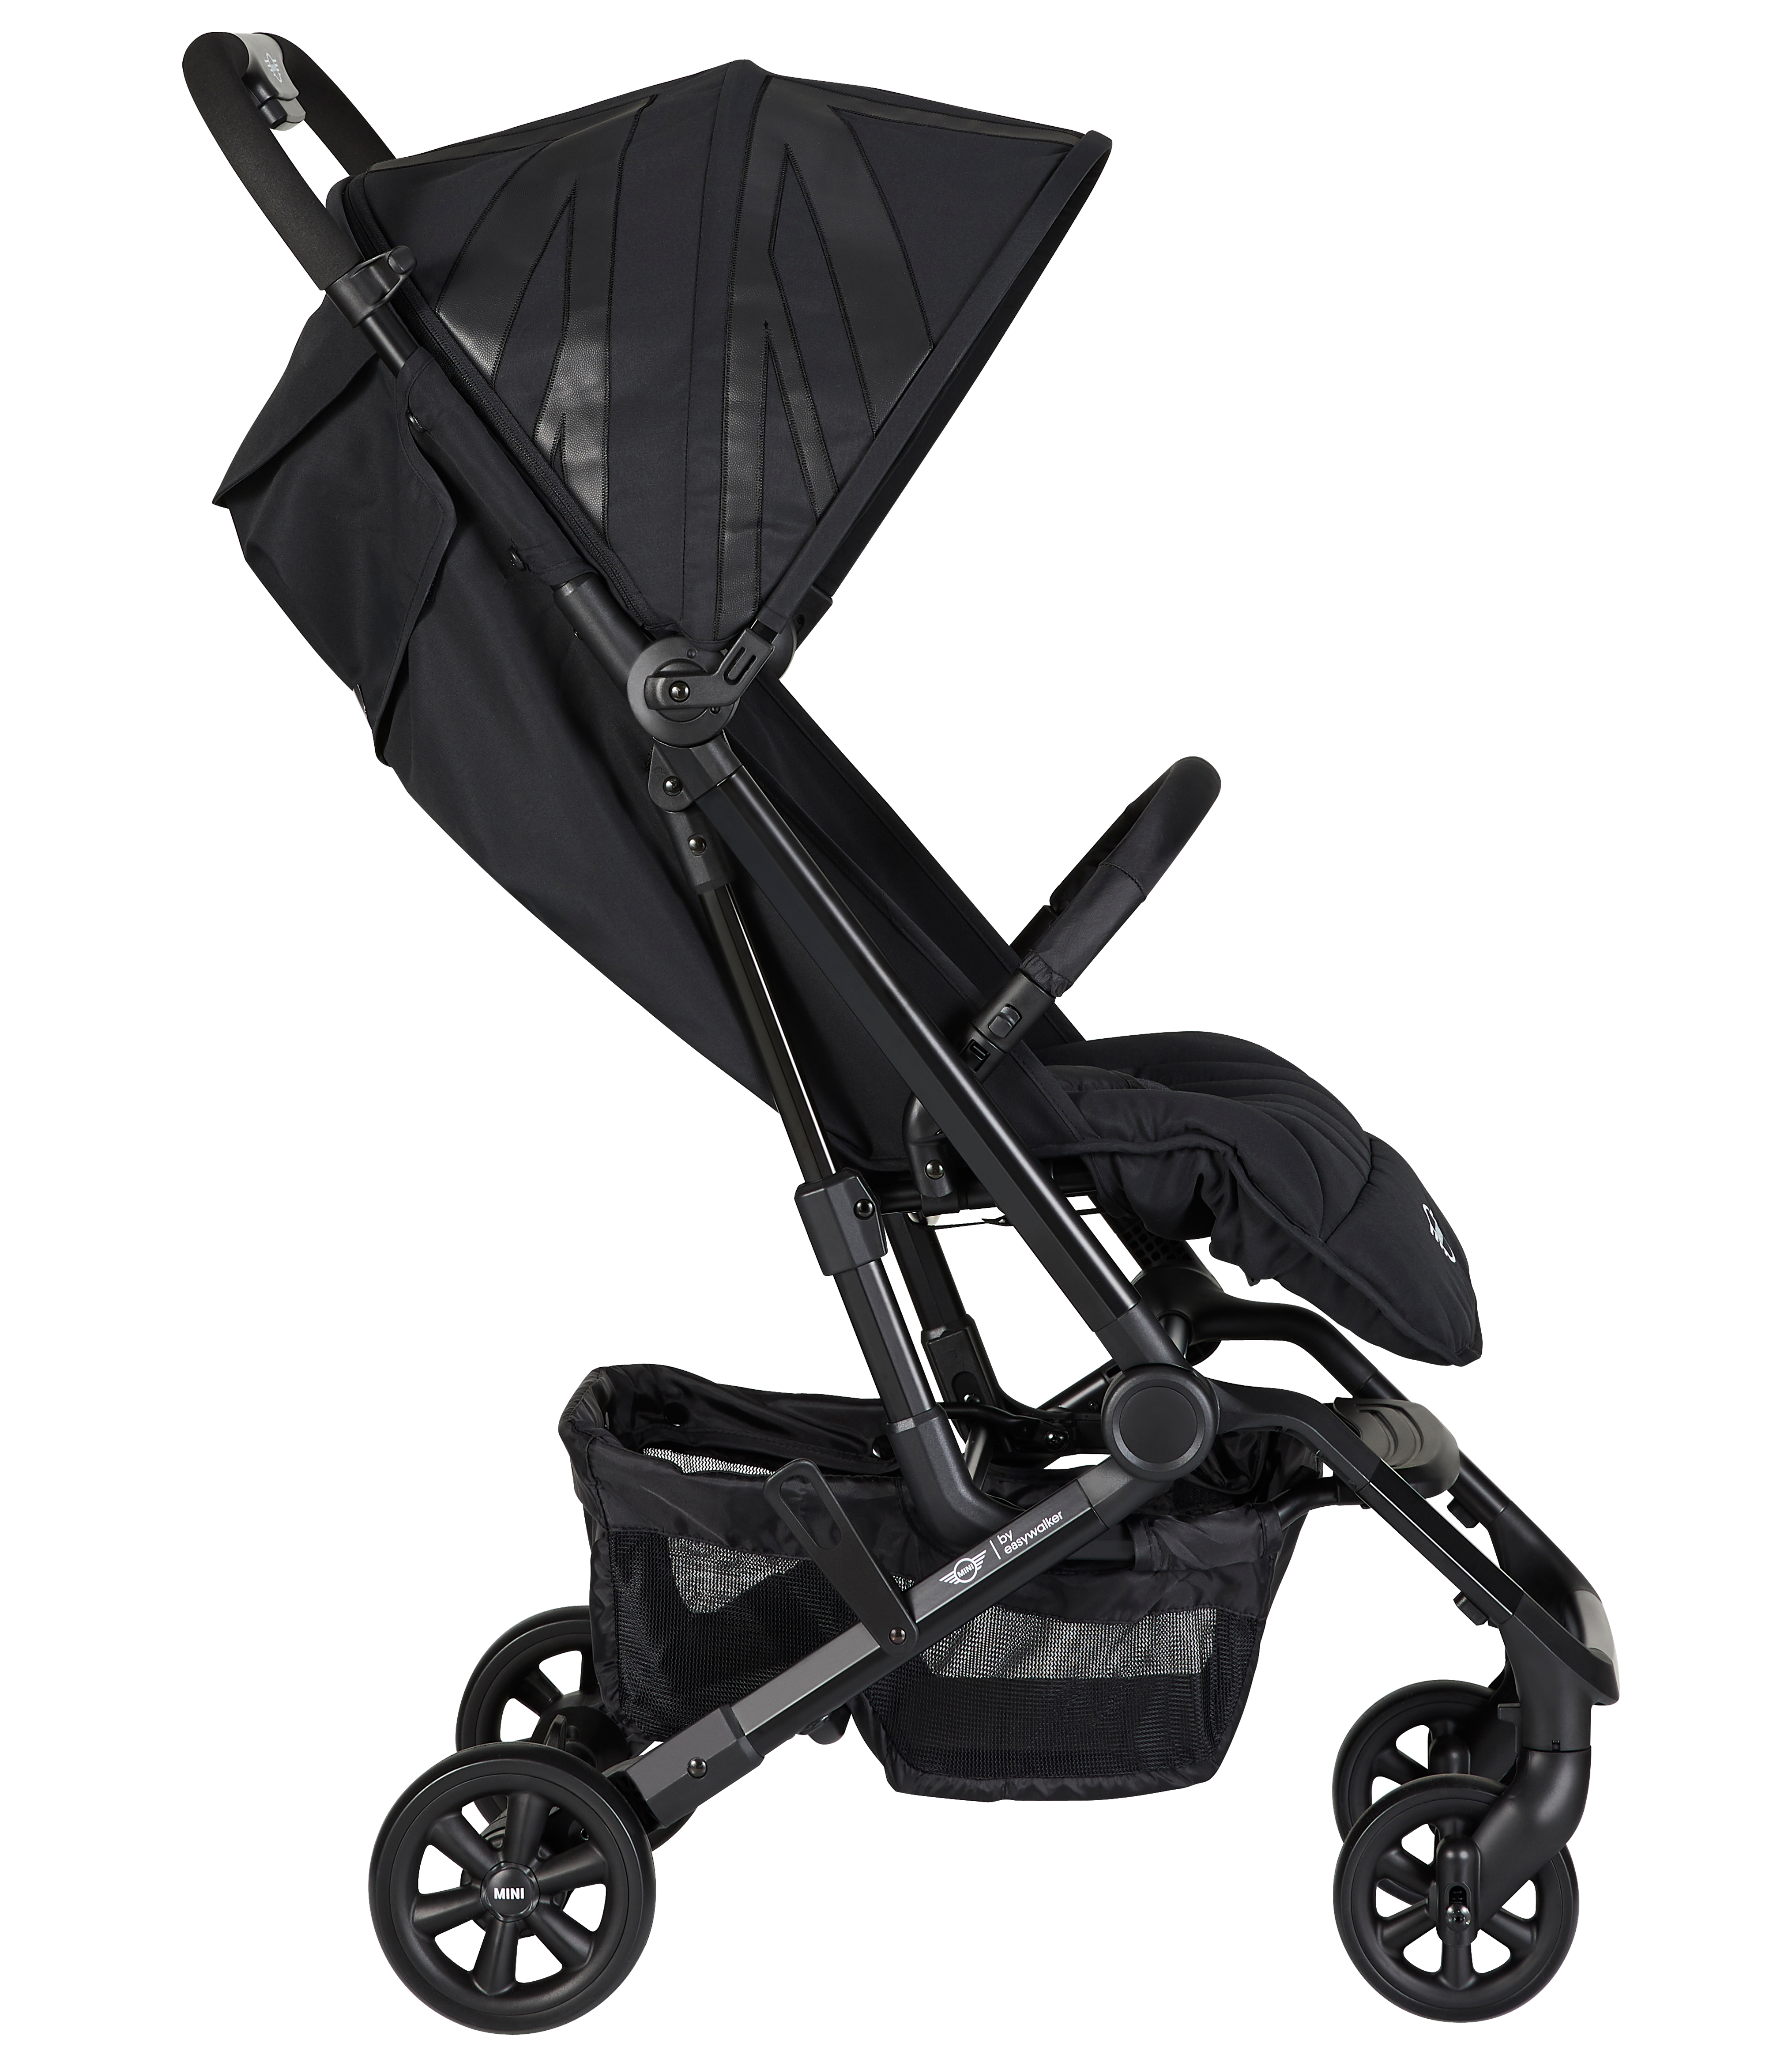 easywalker mini xs stroller